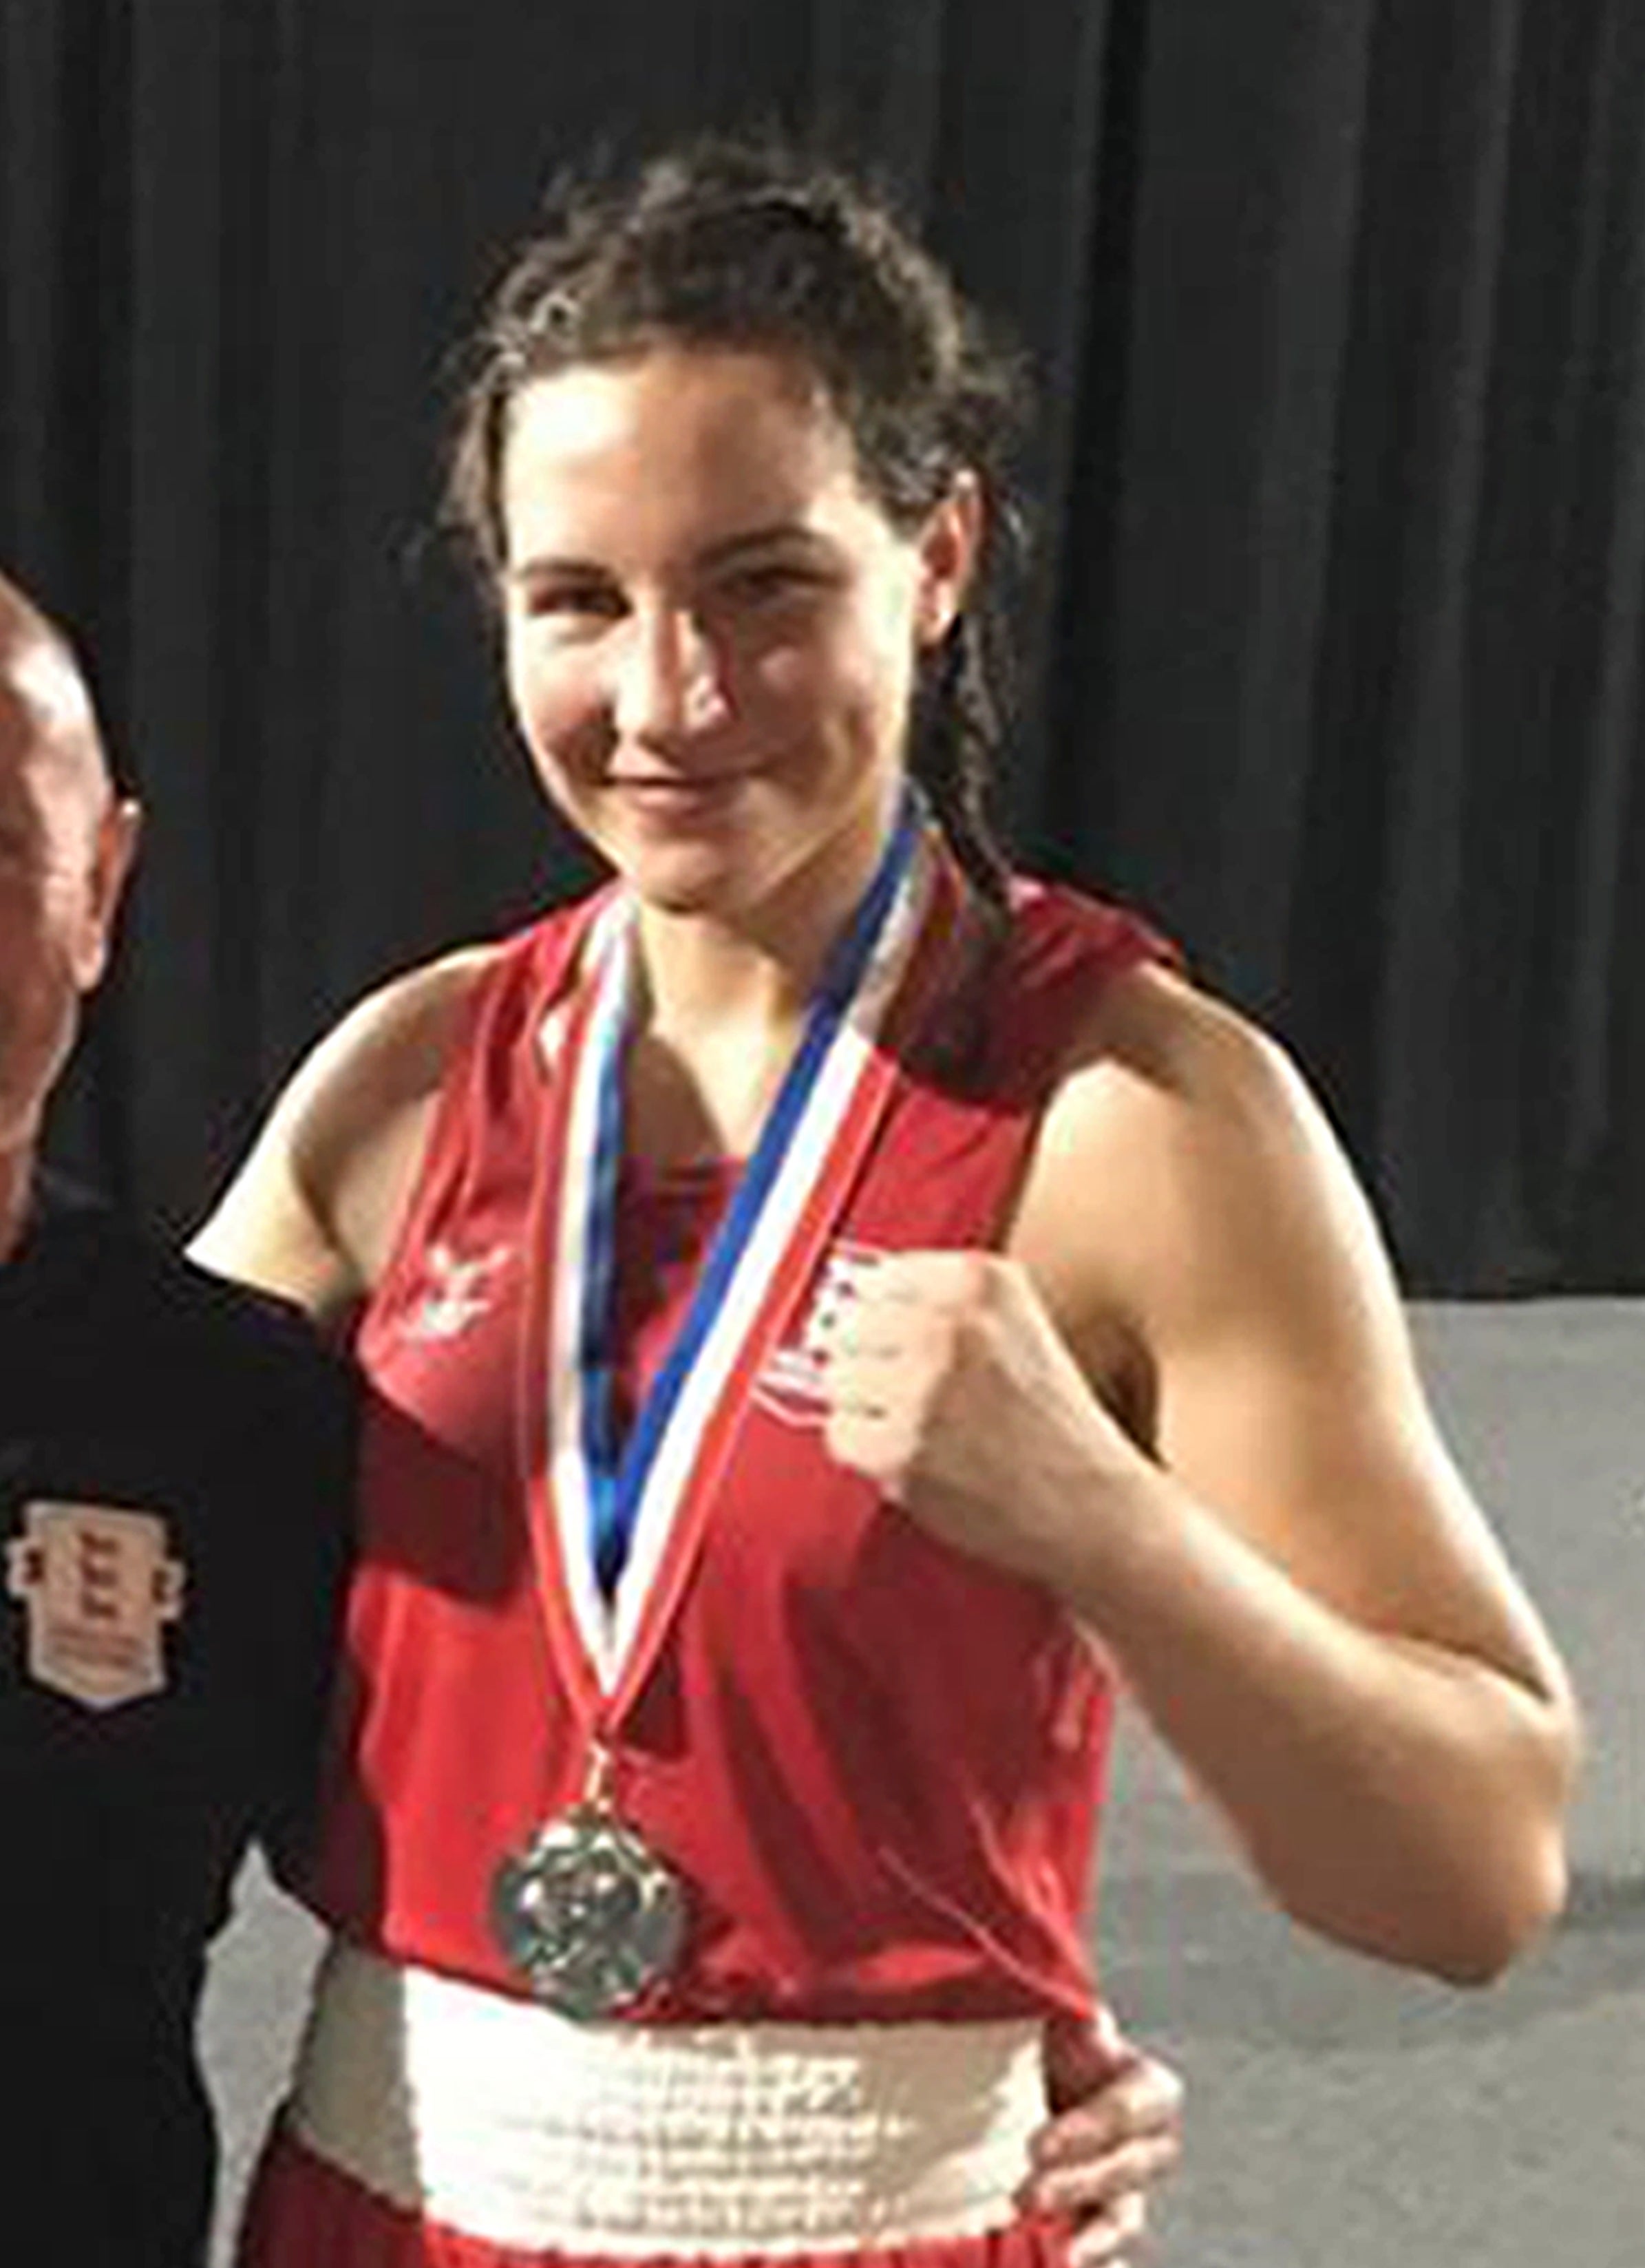 Amateur boxer Elena Narozanski (PA)